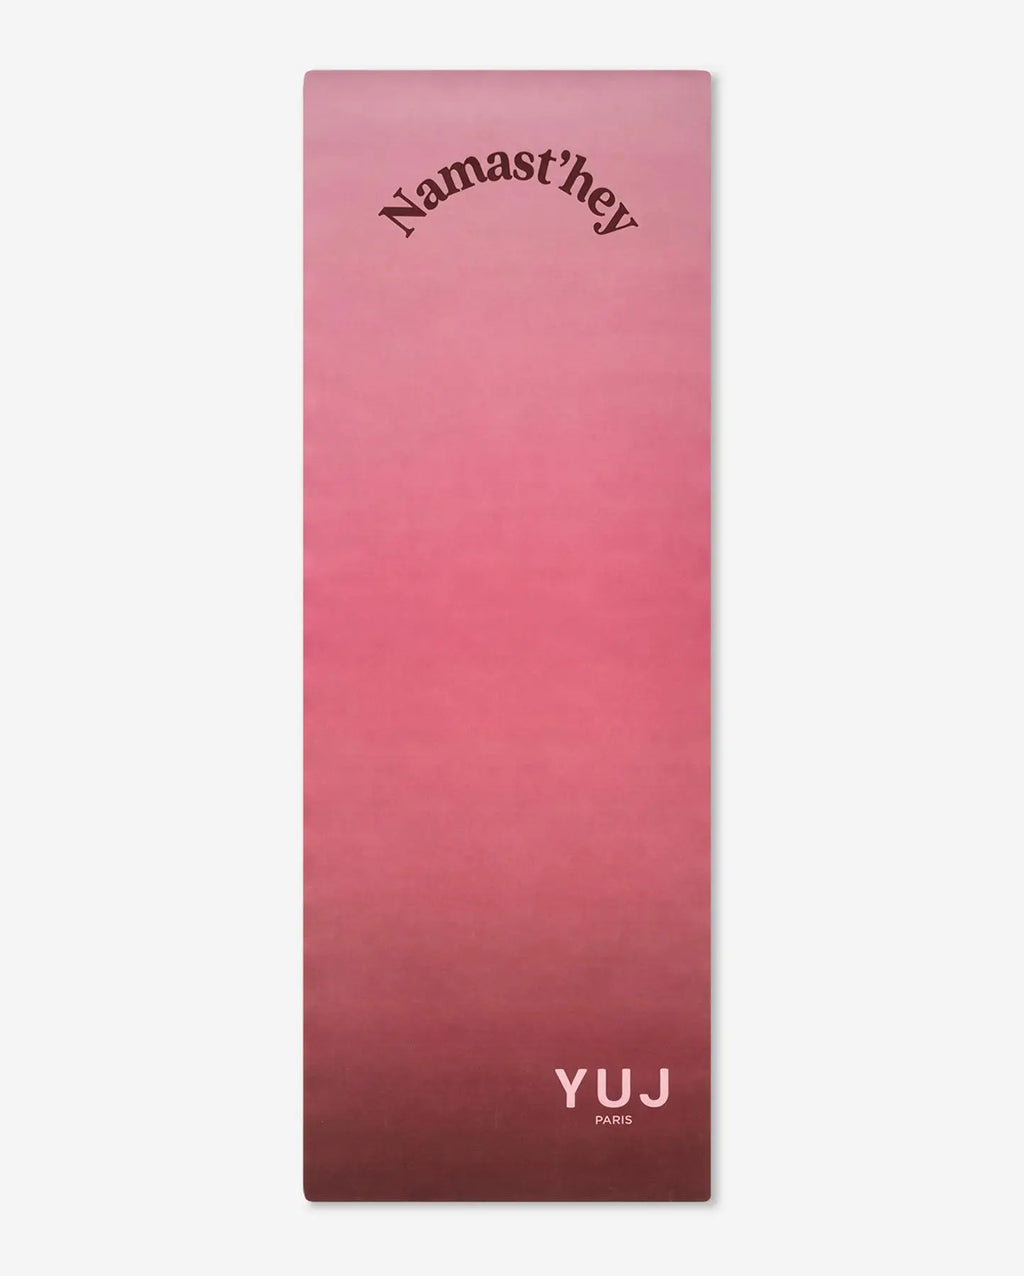 Tapis de yoga GRADIENT Namast'hey - 3mm YUJ - Maison de pleine conscience